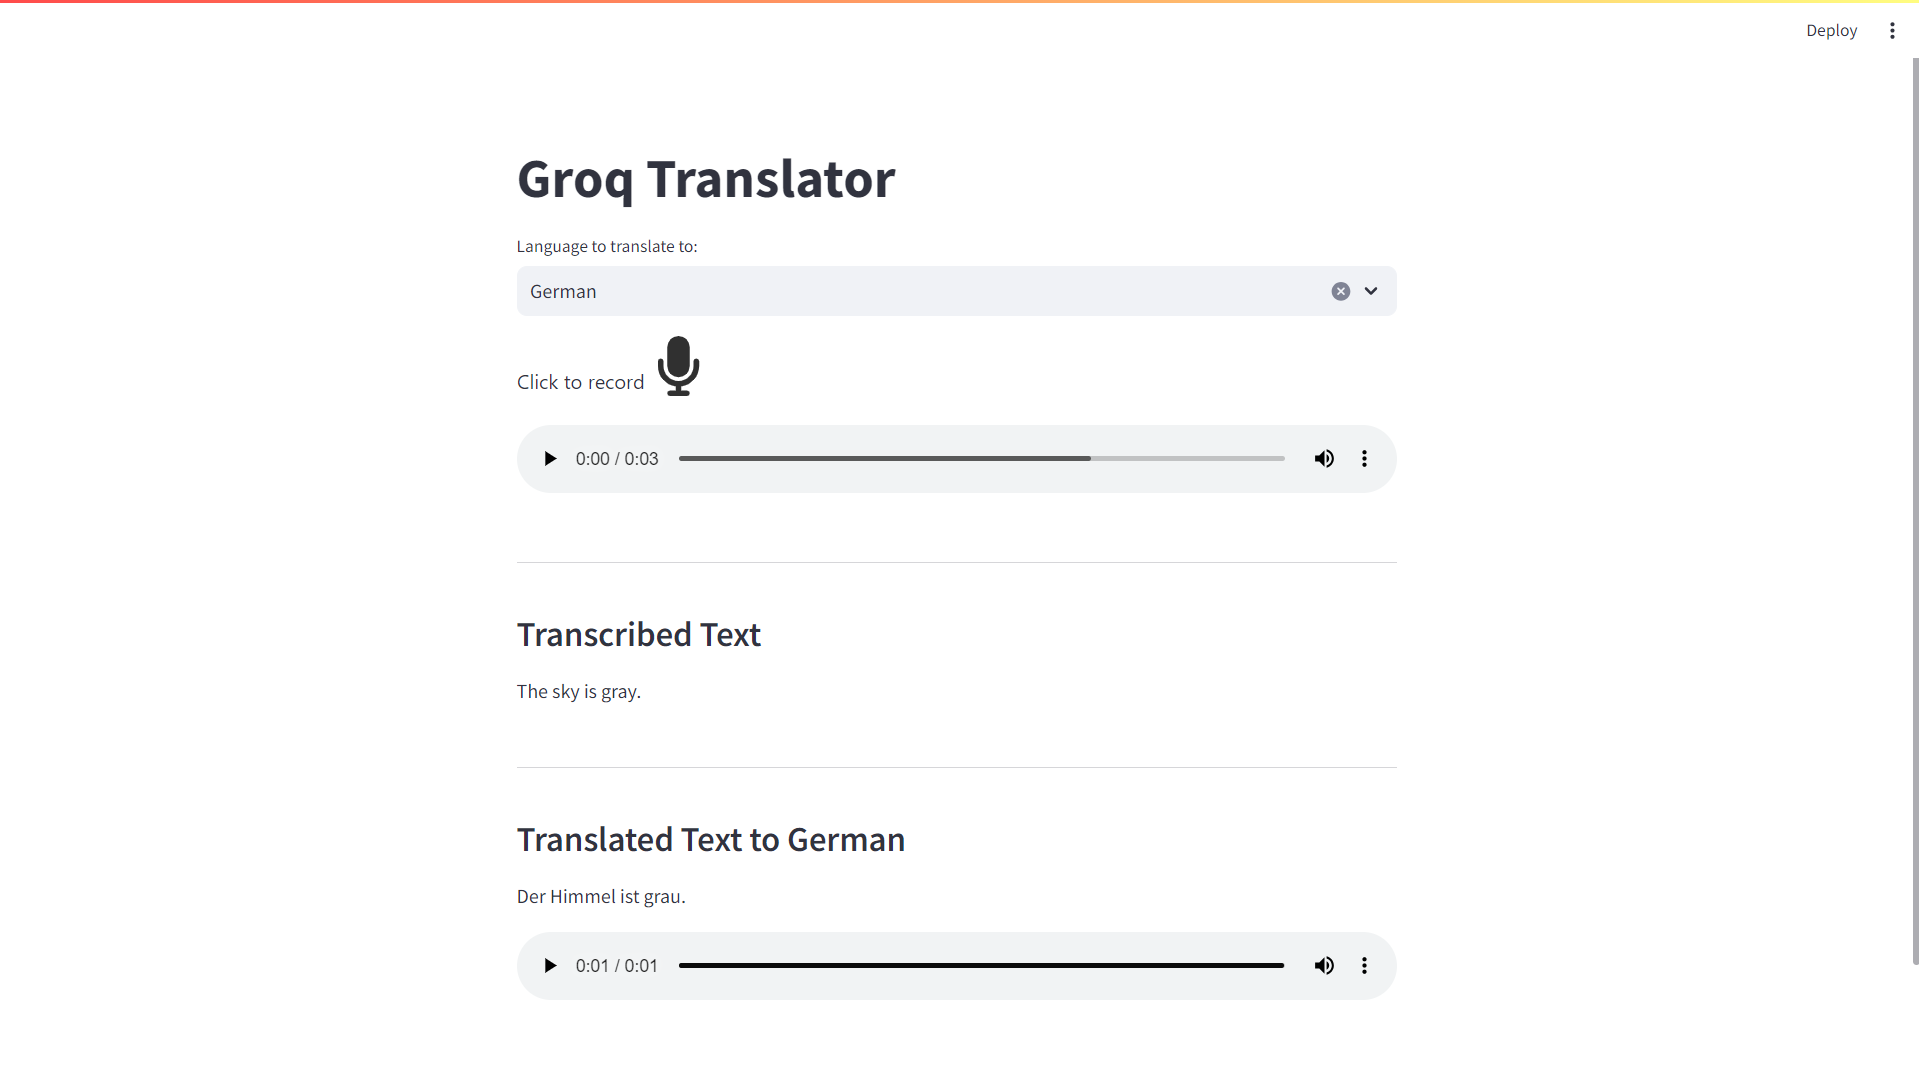 Translating to German